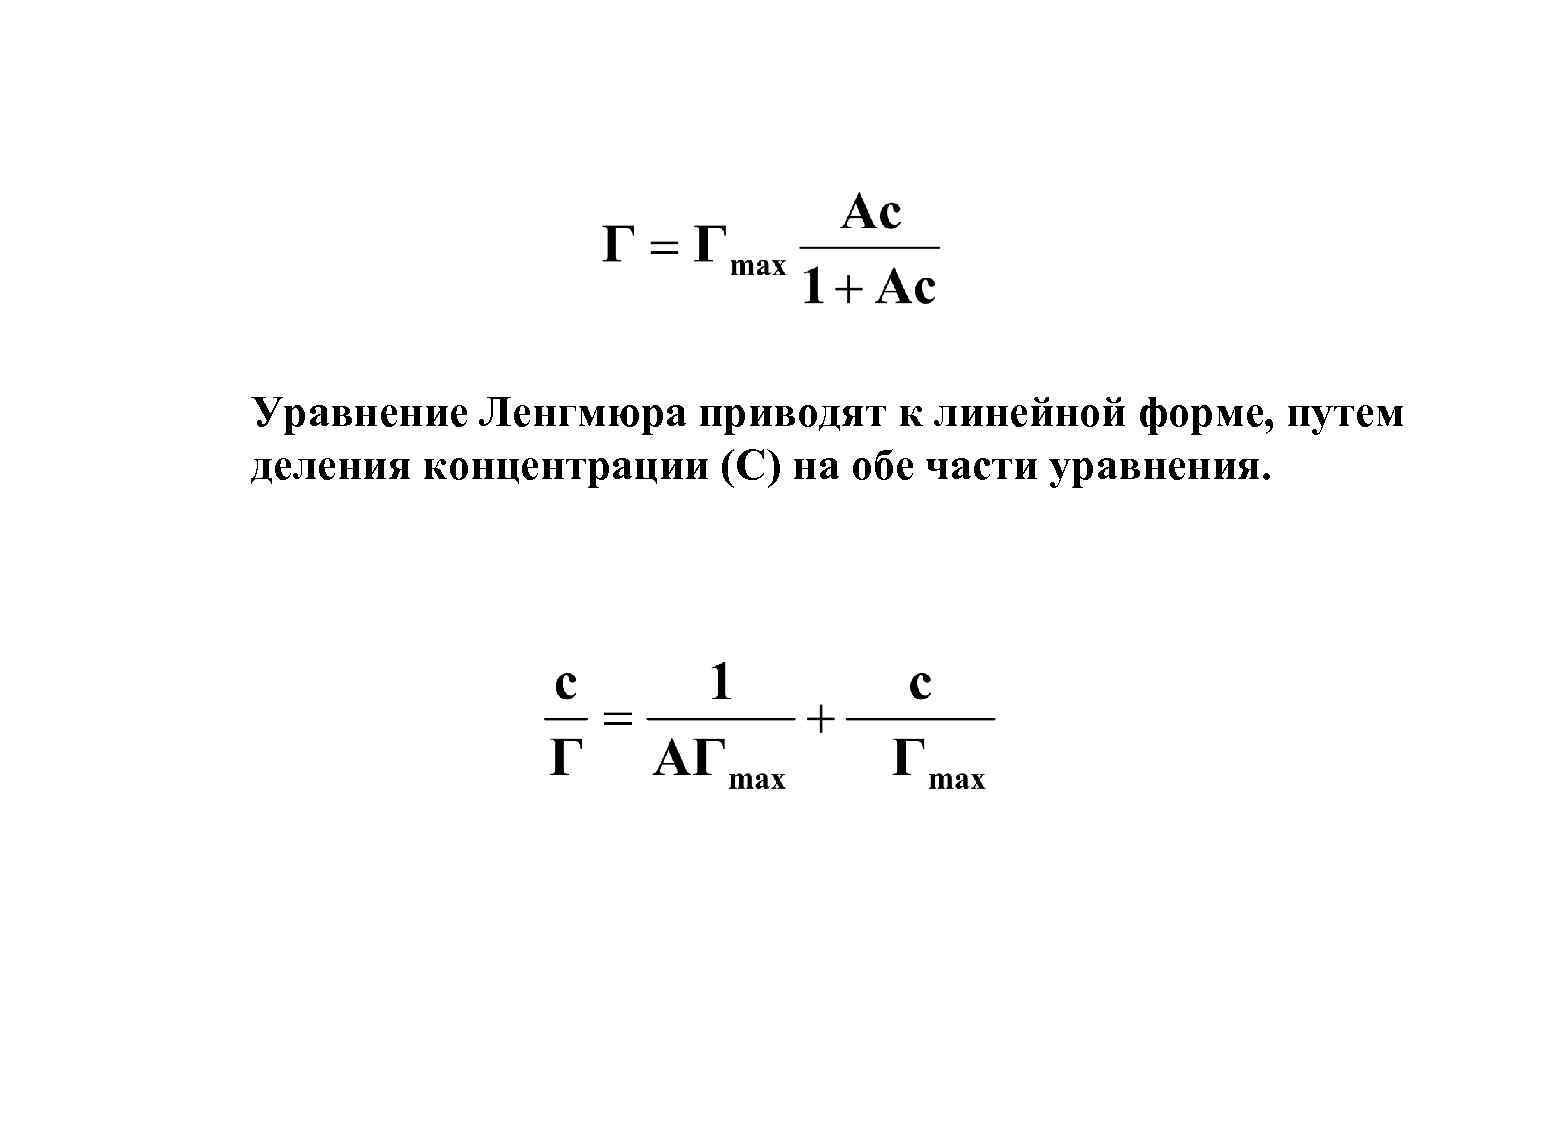 Уравнение приведенной формы. Уравнение и изотерма адсорбции Ленгмюра. Линейная форма изотермы Ленгмюра. Адсорбционное уравнение Ленгмюра. Формула Ленгмюра для адсорбции.